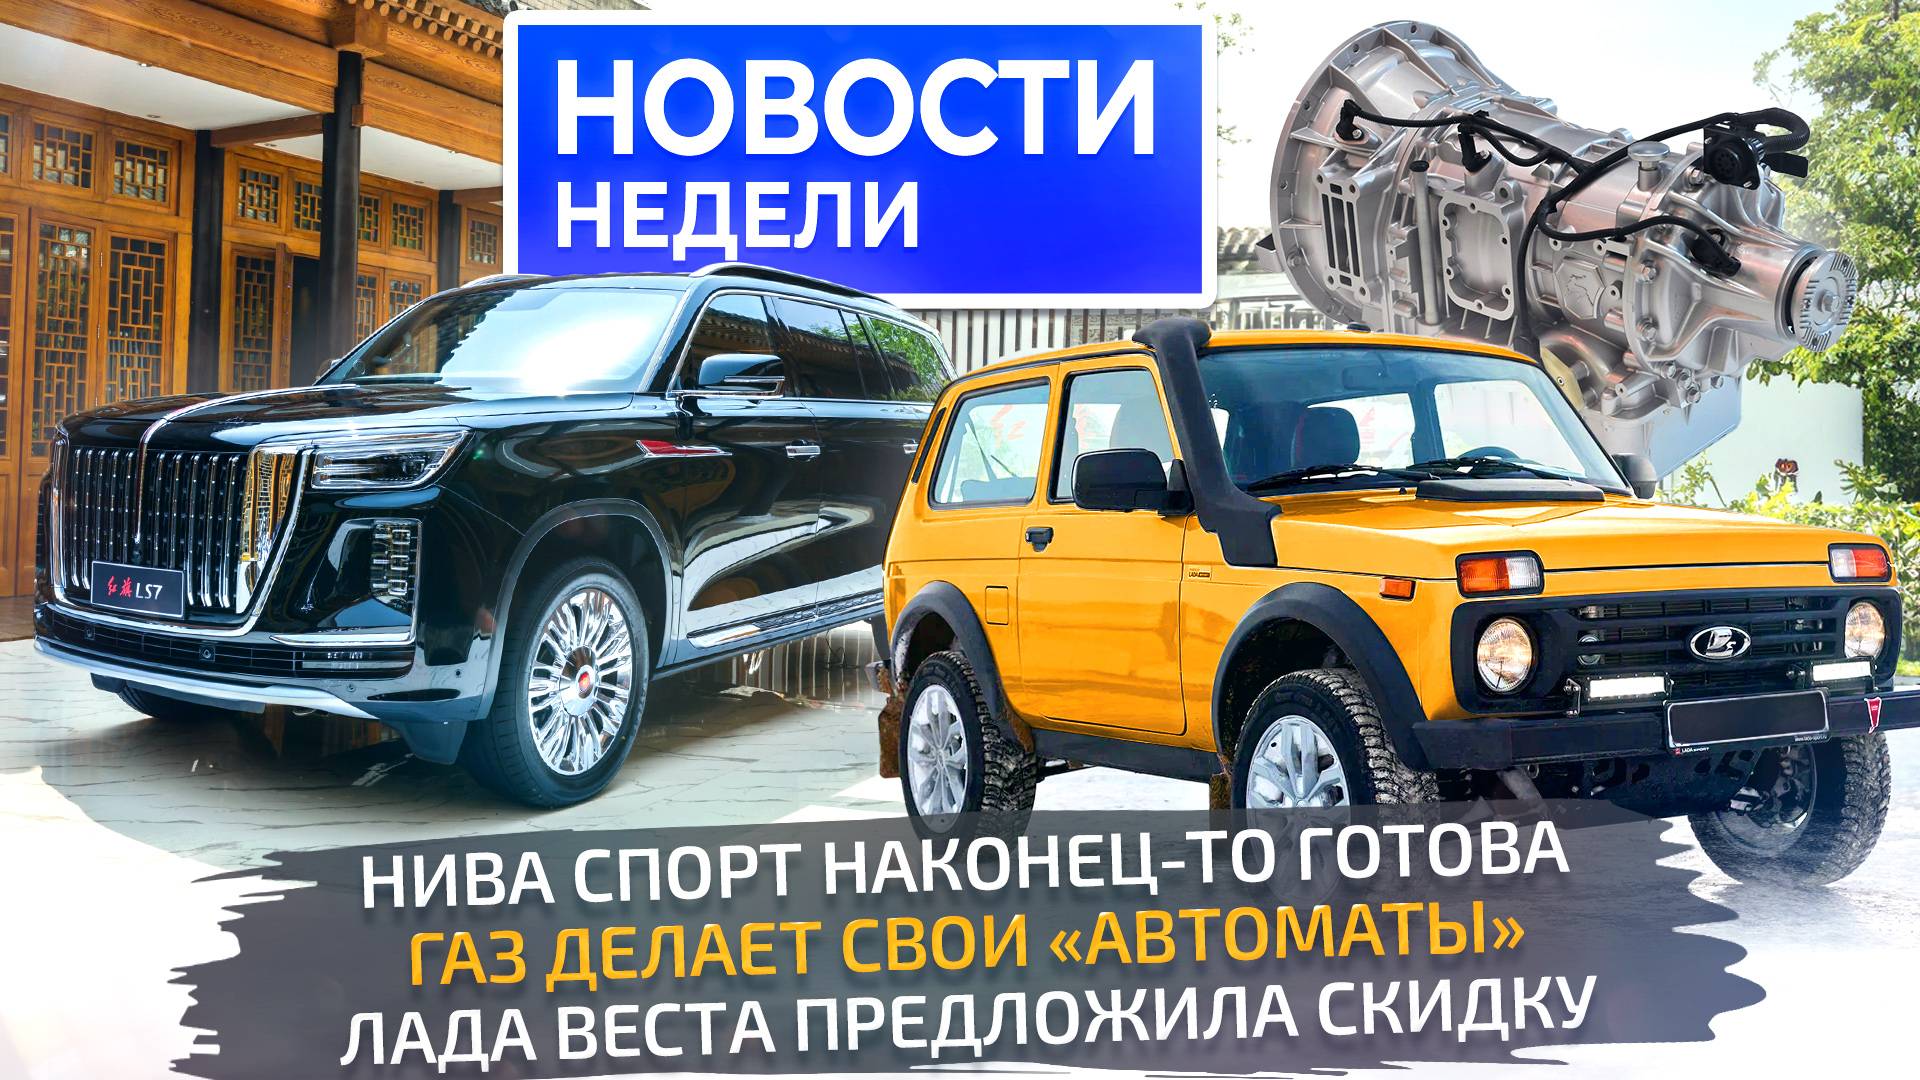 Lada Niva Sport и первая серийная АКП, Vesta со скидкой и роботизация автопрома